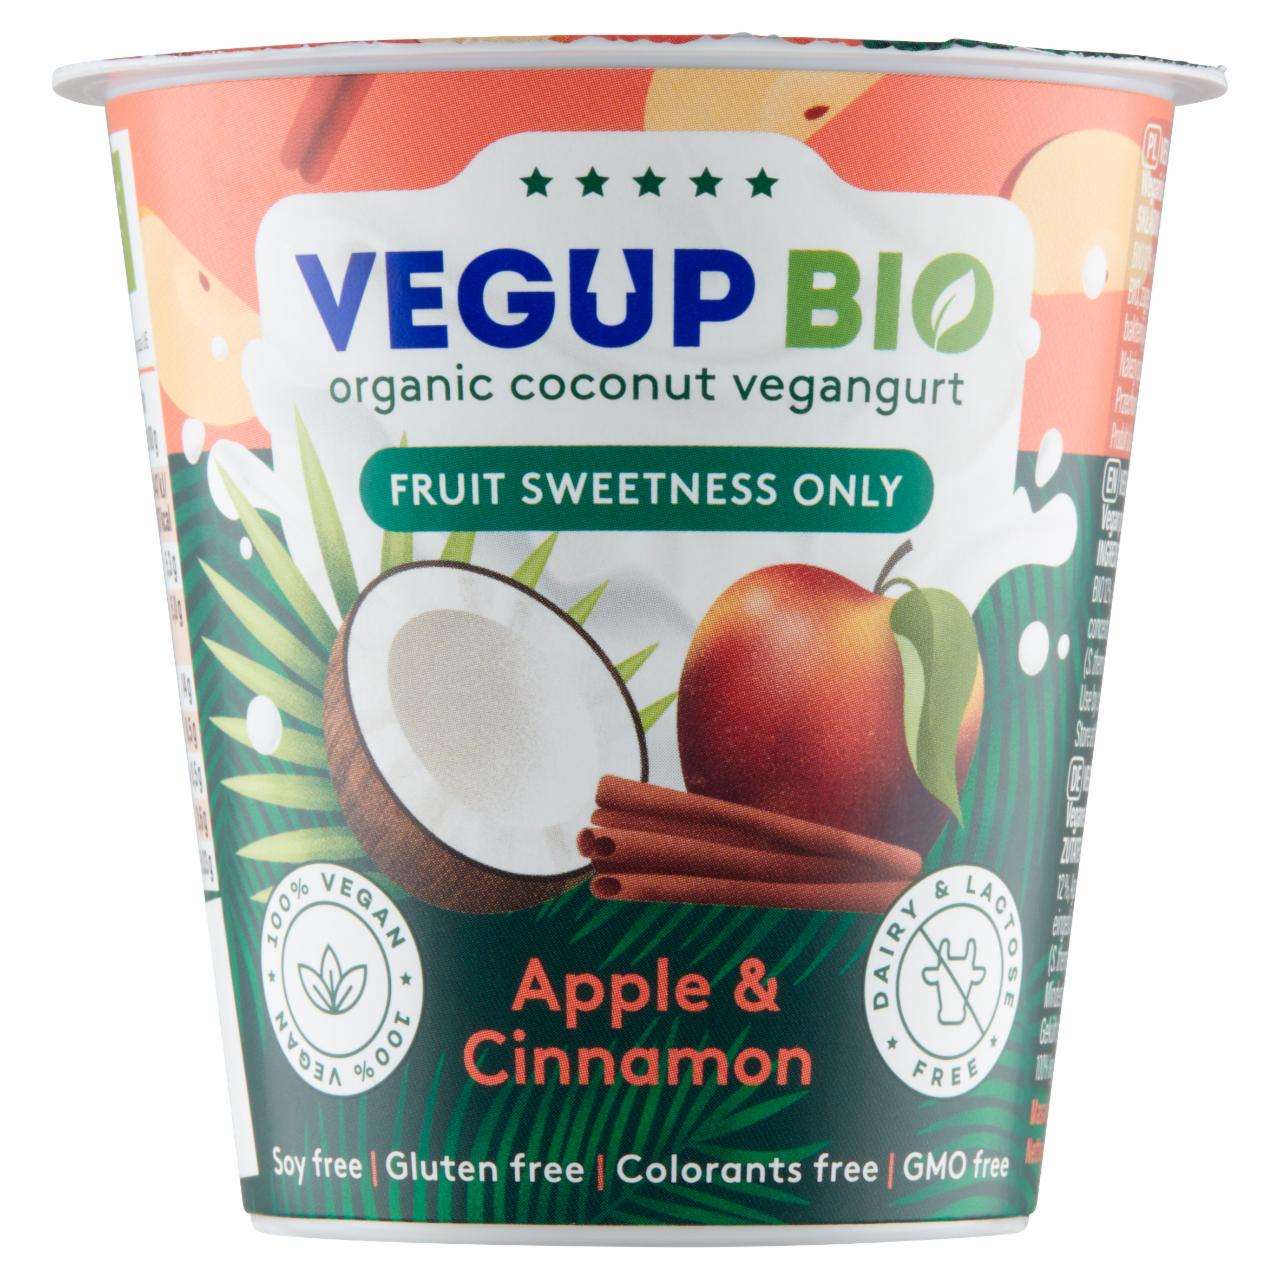 Zdjęcia - Vegup Bio Kokosowy vegangurt jabłko & cynamon 140 g